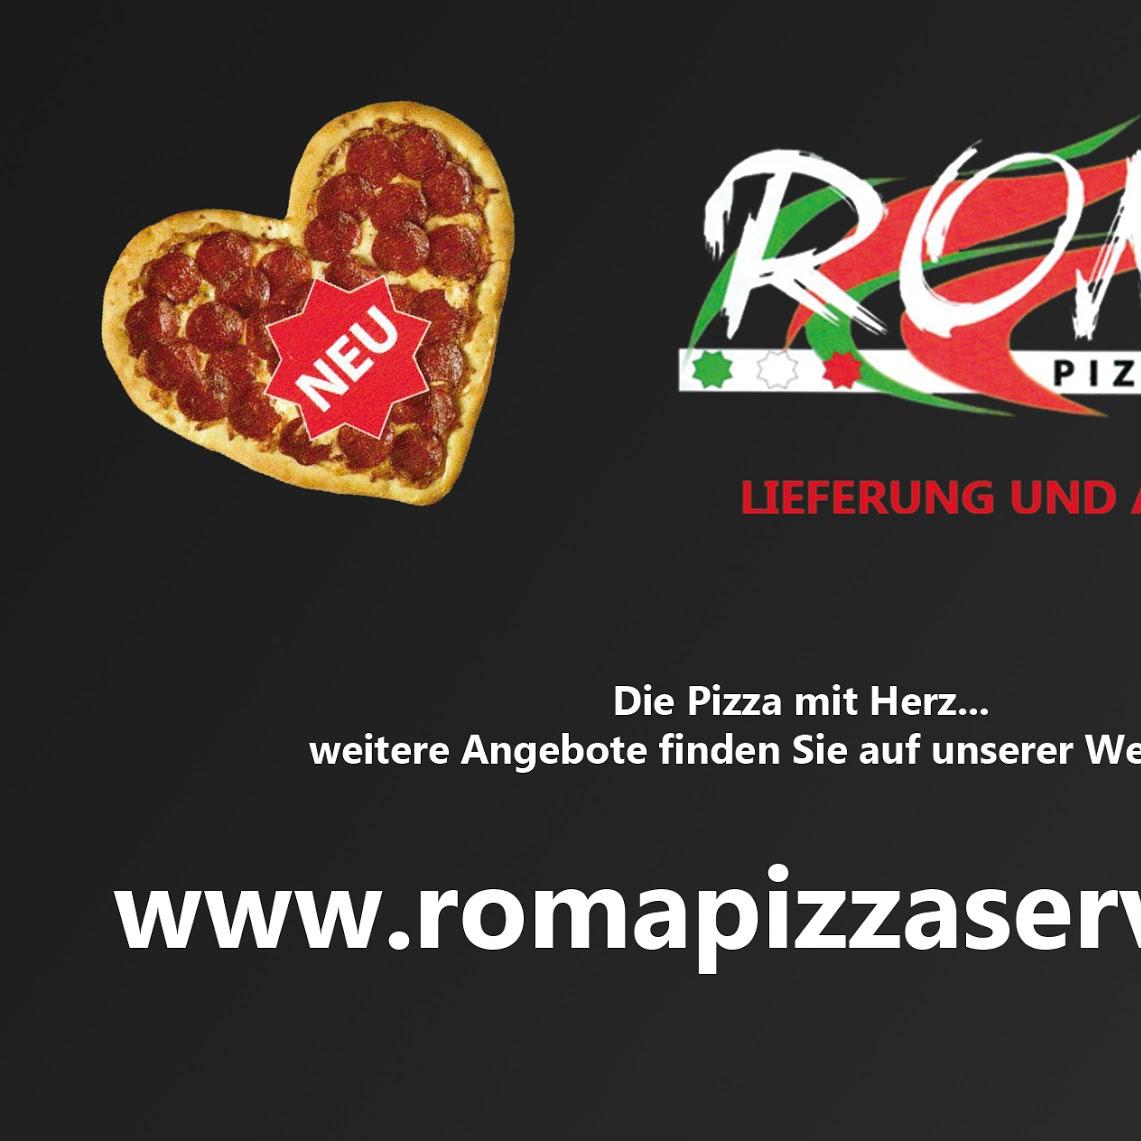 Restaurant "Roma Pizza" in Gerlingen